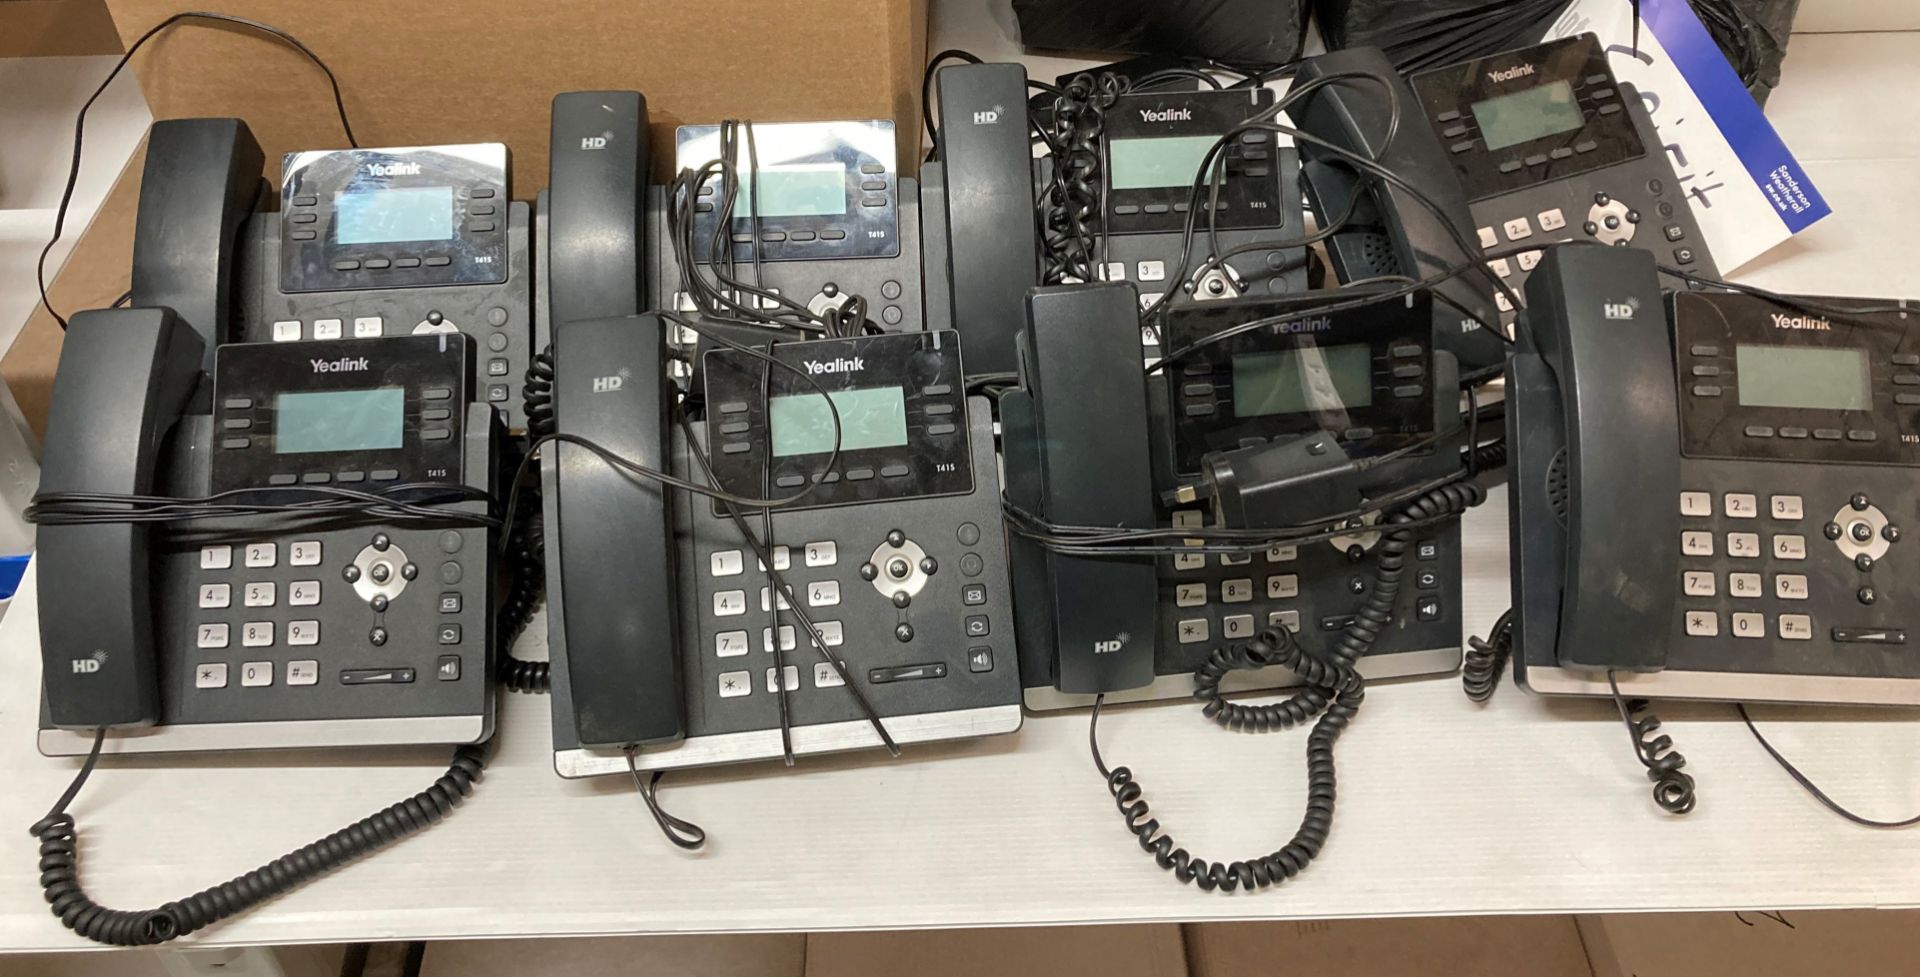 8 x Yealink T41S HD telephones (M11)